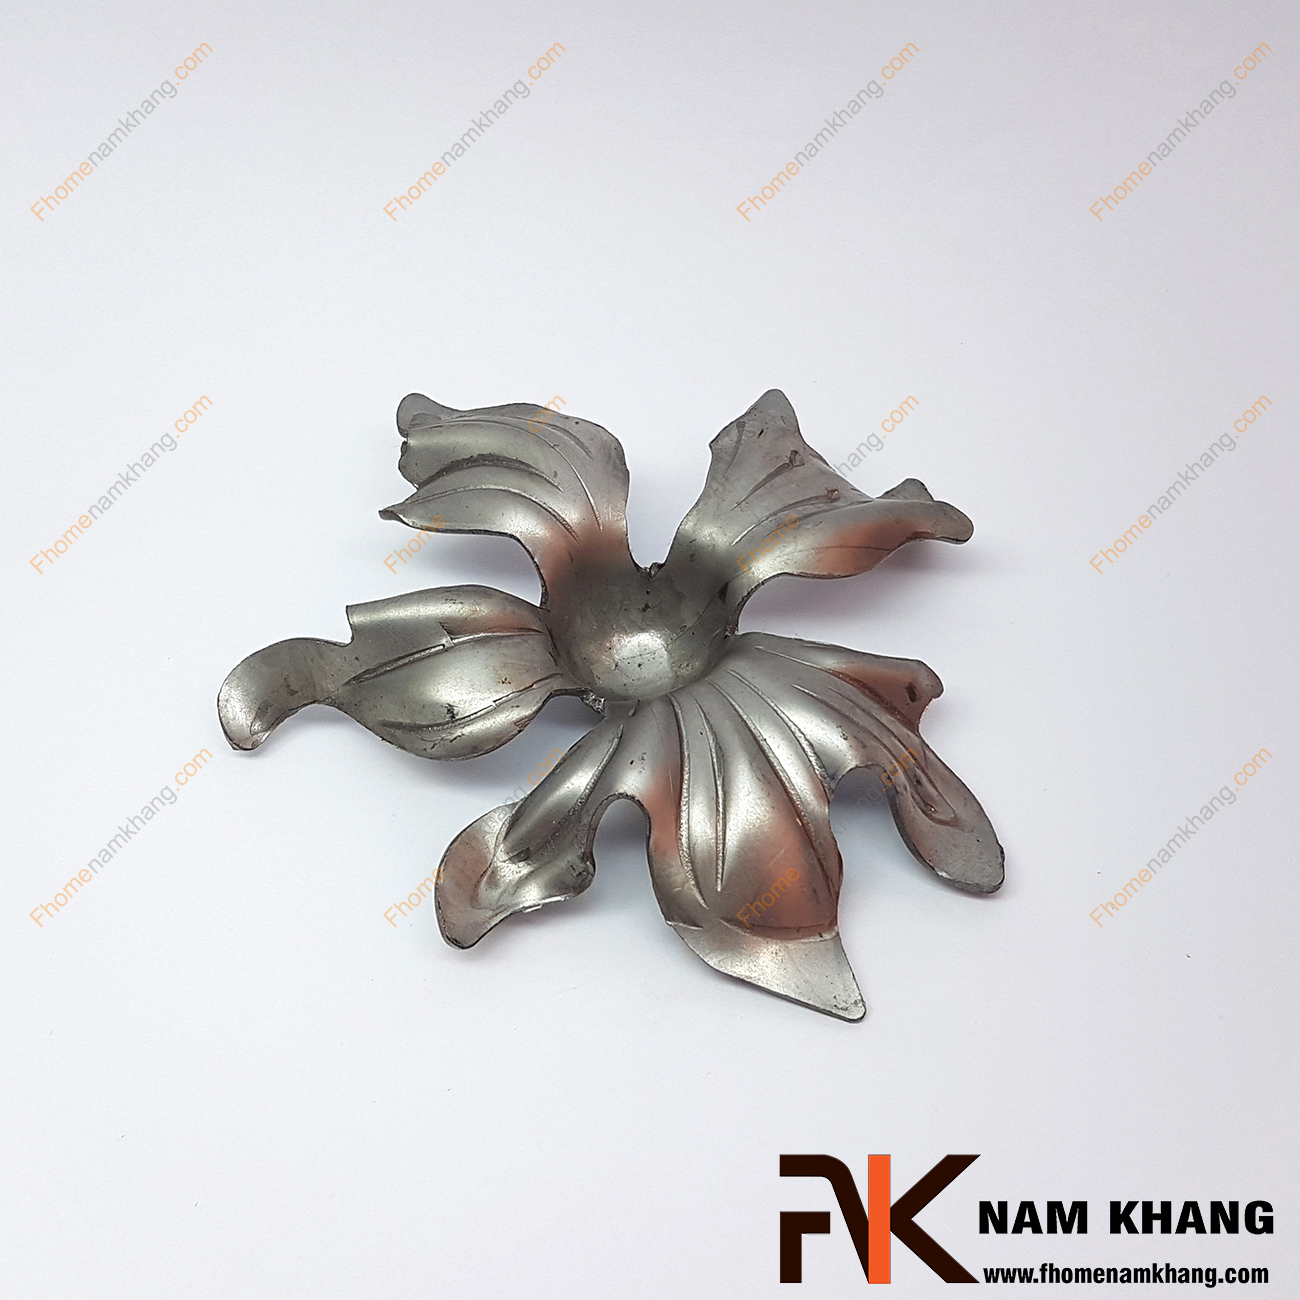 Hoa thép dập hình bông hoa 5 cánh nhọn NKS-82 được sản xuất từ thép tấm có độ dày 1-2mm, có bề mặt láng mịn, hàn gắn dể dàng vào các chi tiết thép khác.